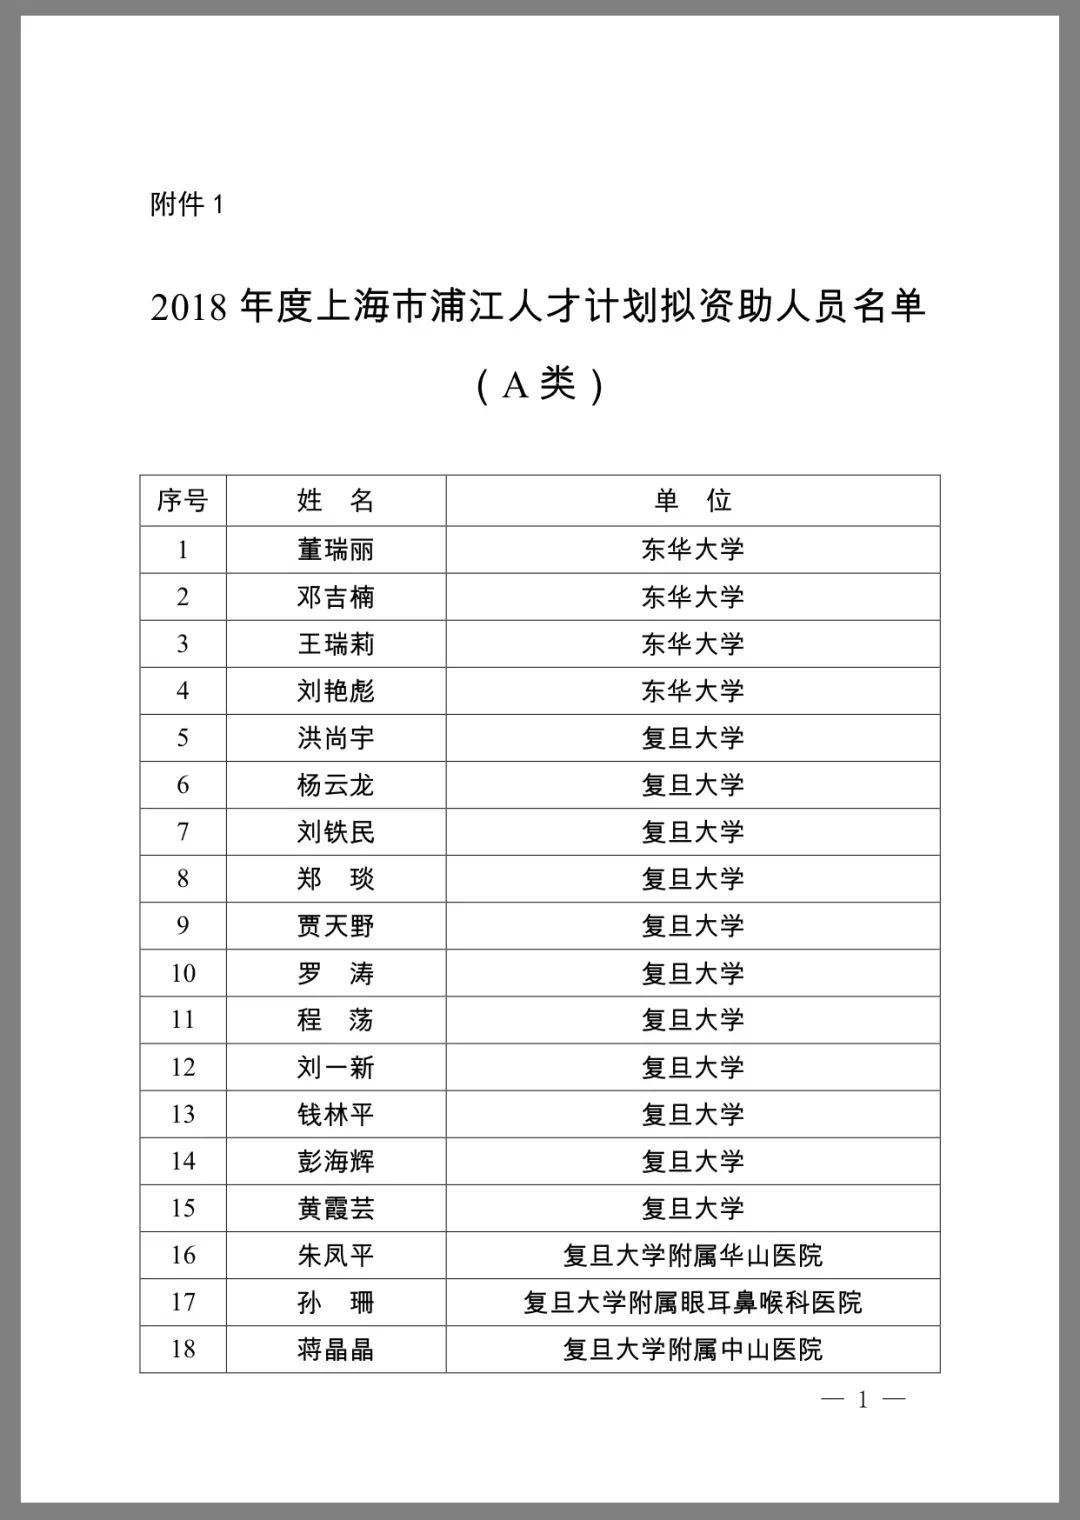 【汀关注】入选2018年度上海市浦江人才计划